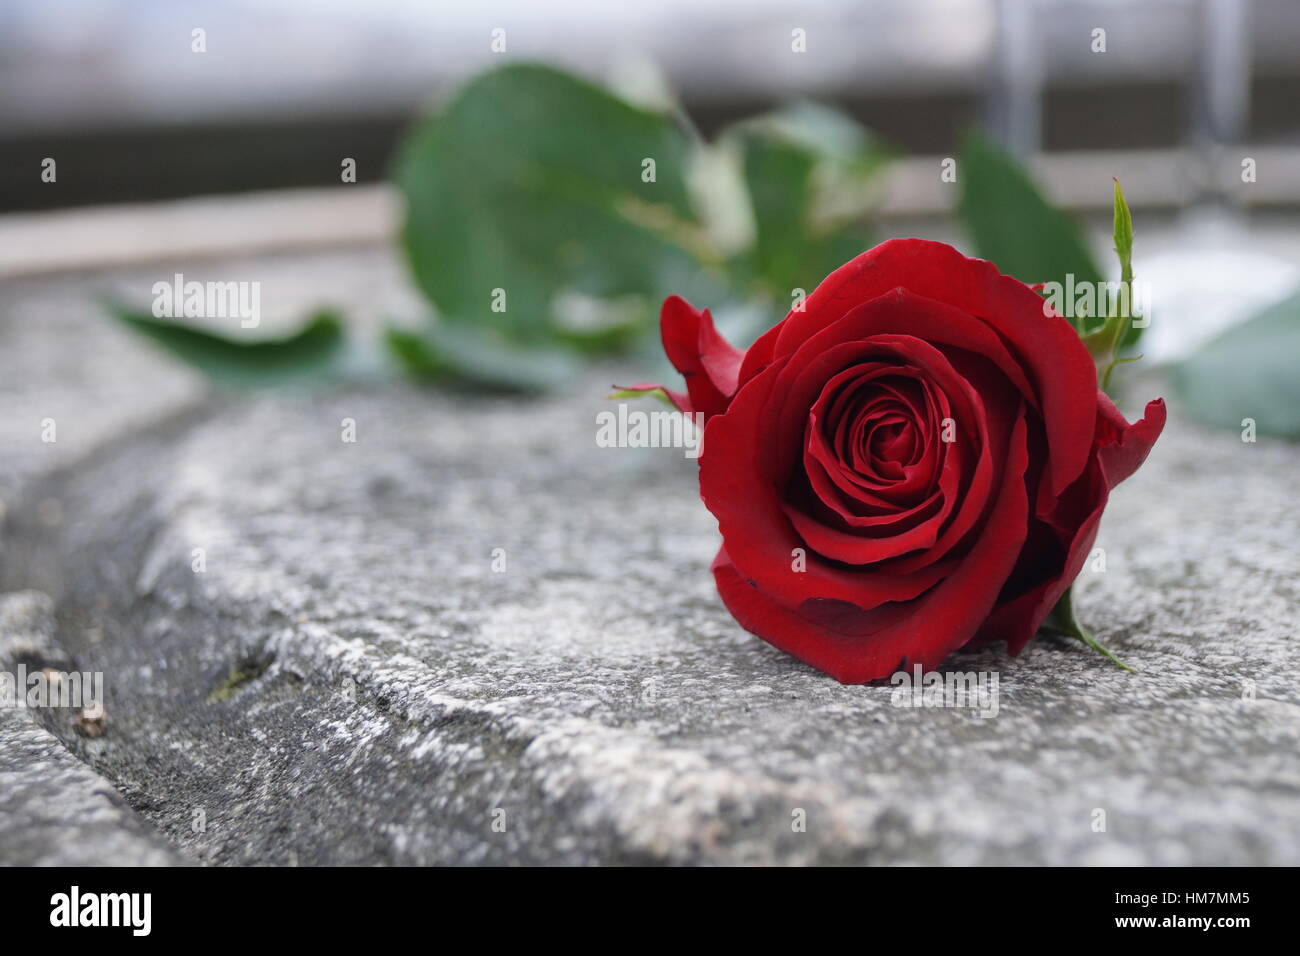 Rose rouge romantique allongé sur une table en pierre Photo Stock - Alamy